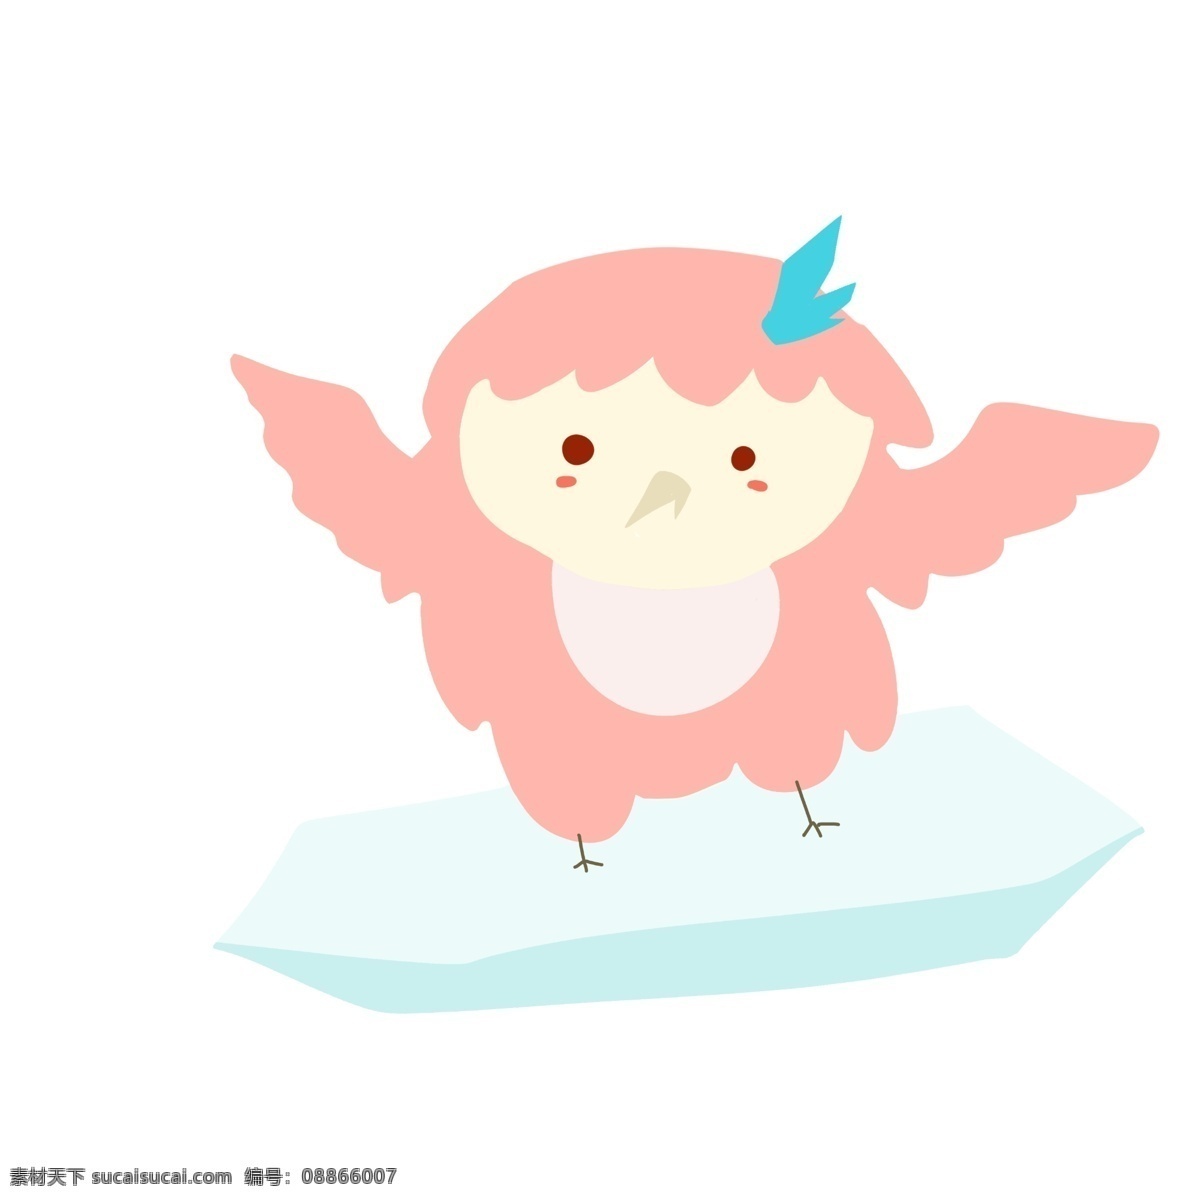 粉色 卡通 猫头鹰 小动物